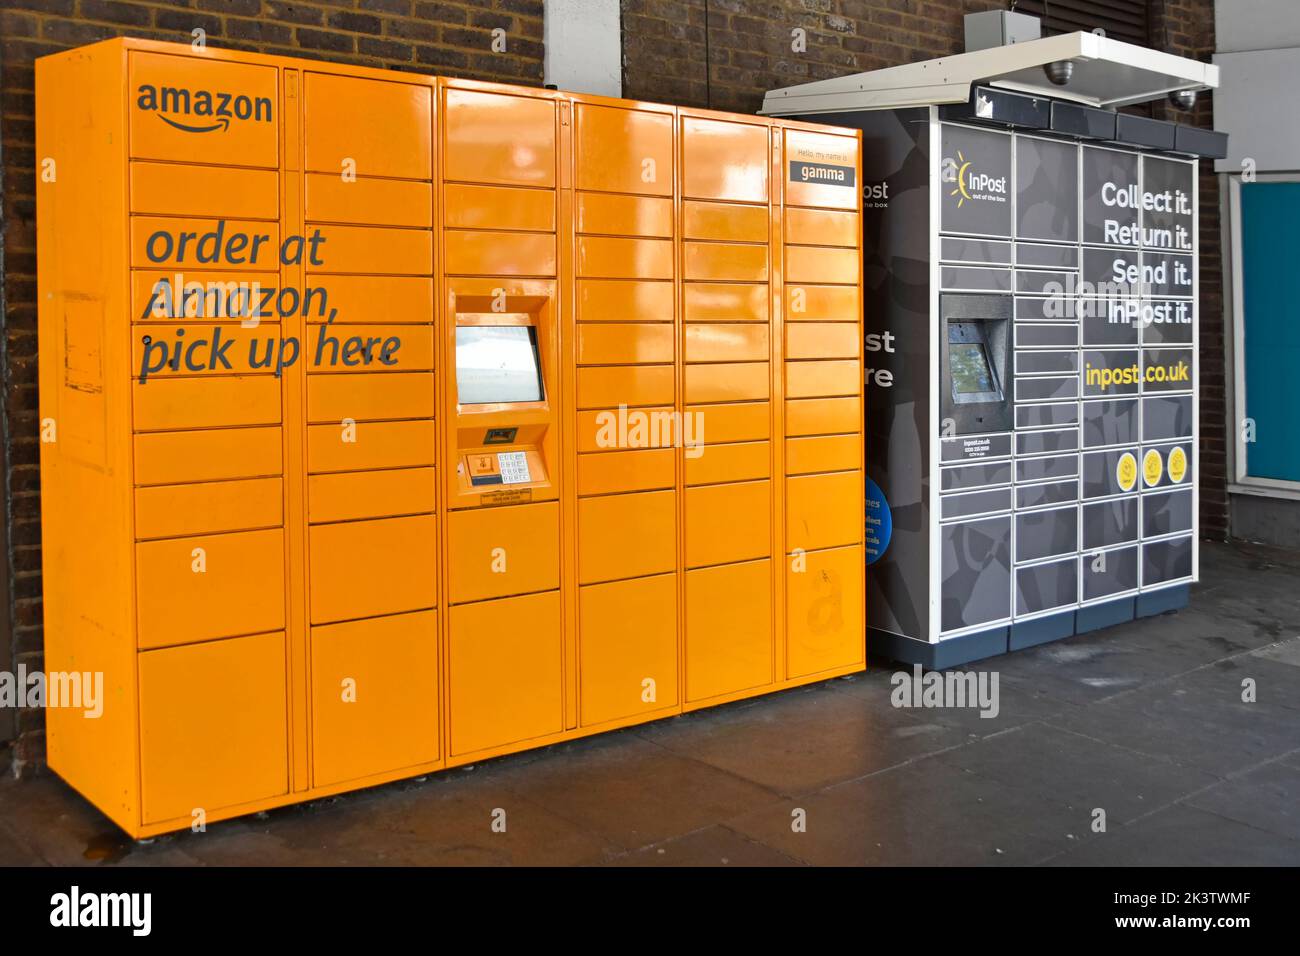 Point de ramassage de colis de casier Amazon à côté d'InPost un dépôt d'affaires de Services logistiques polonais Collect Return Envoyer casier de colis automatisé Royaume-Uni Banque D'Images